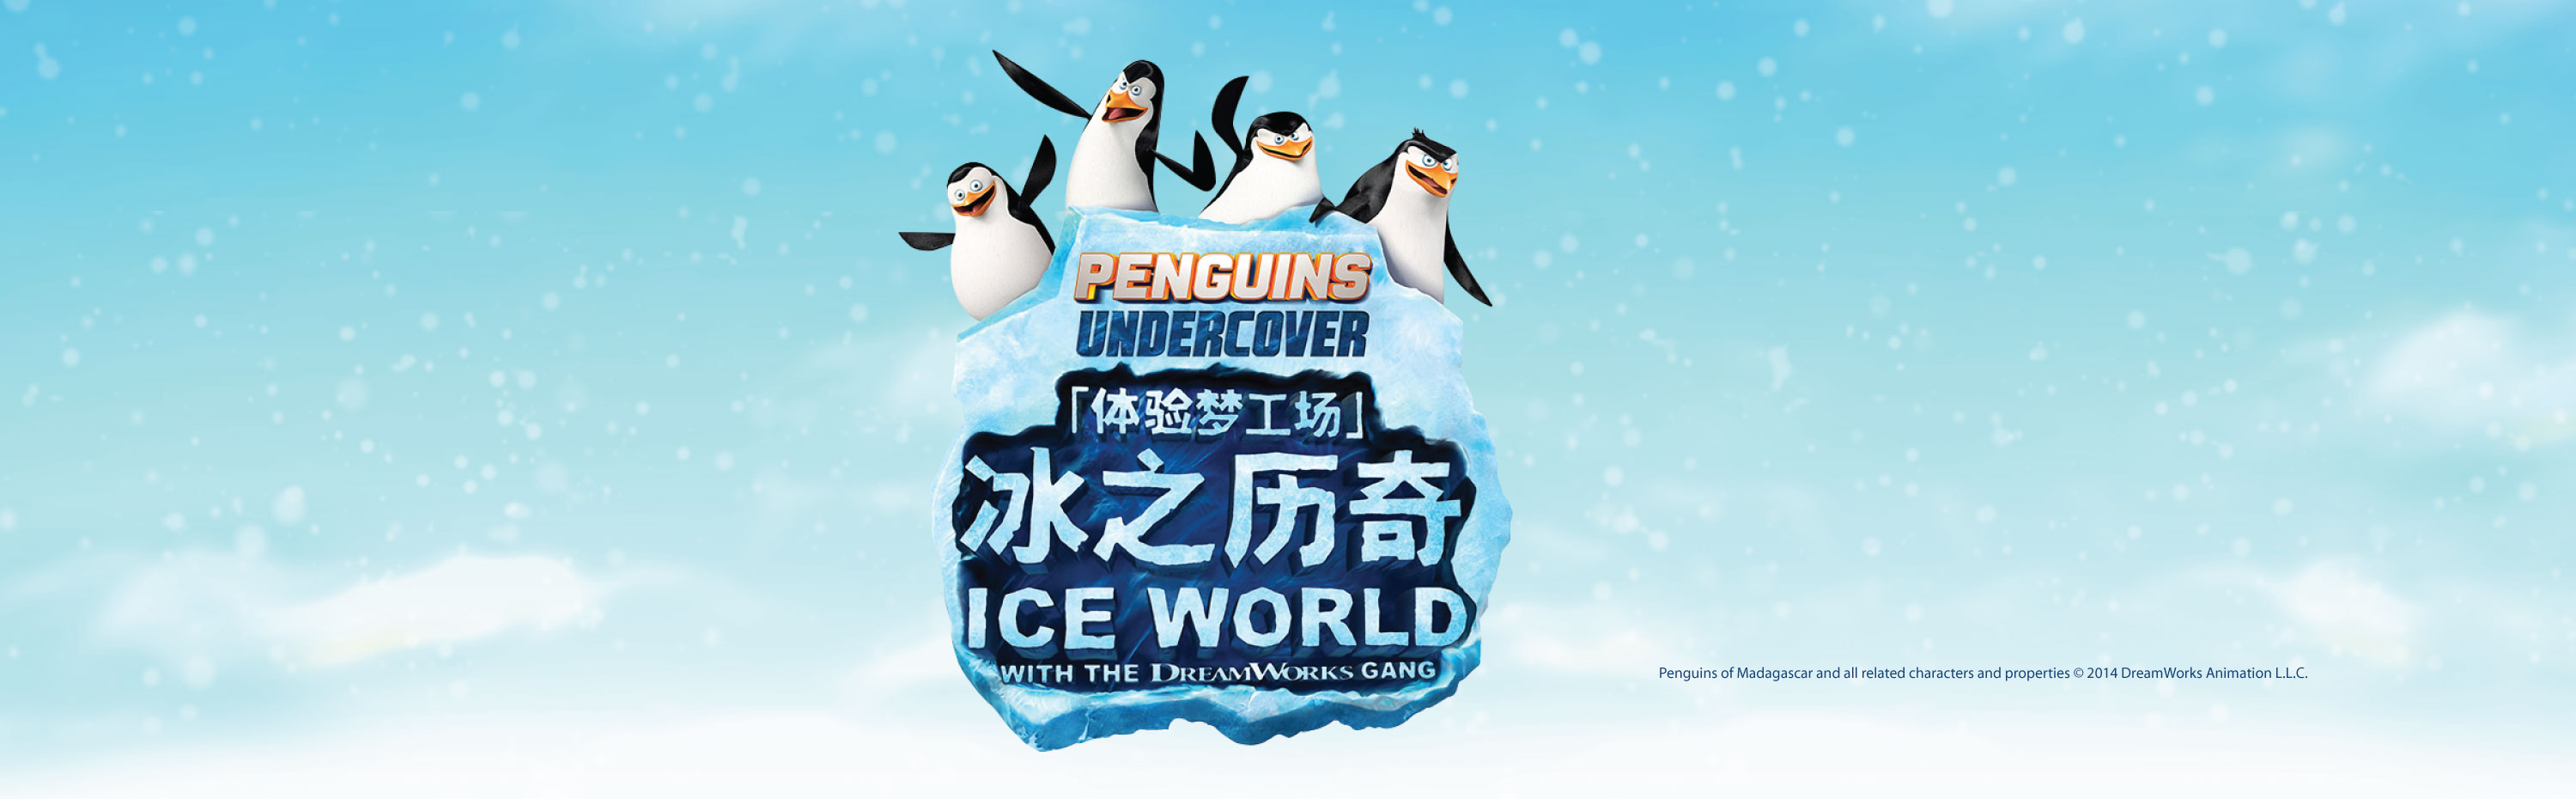 Ice World 2014 Venetian Macao